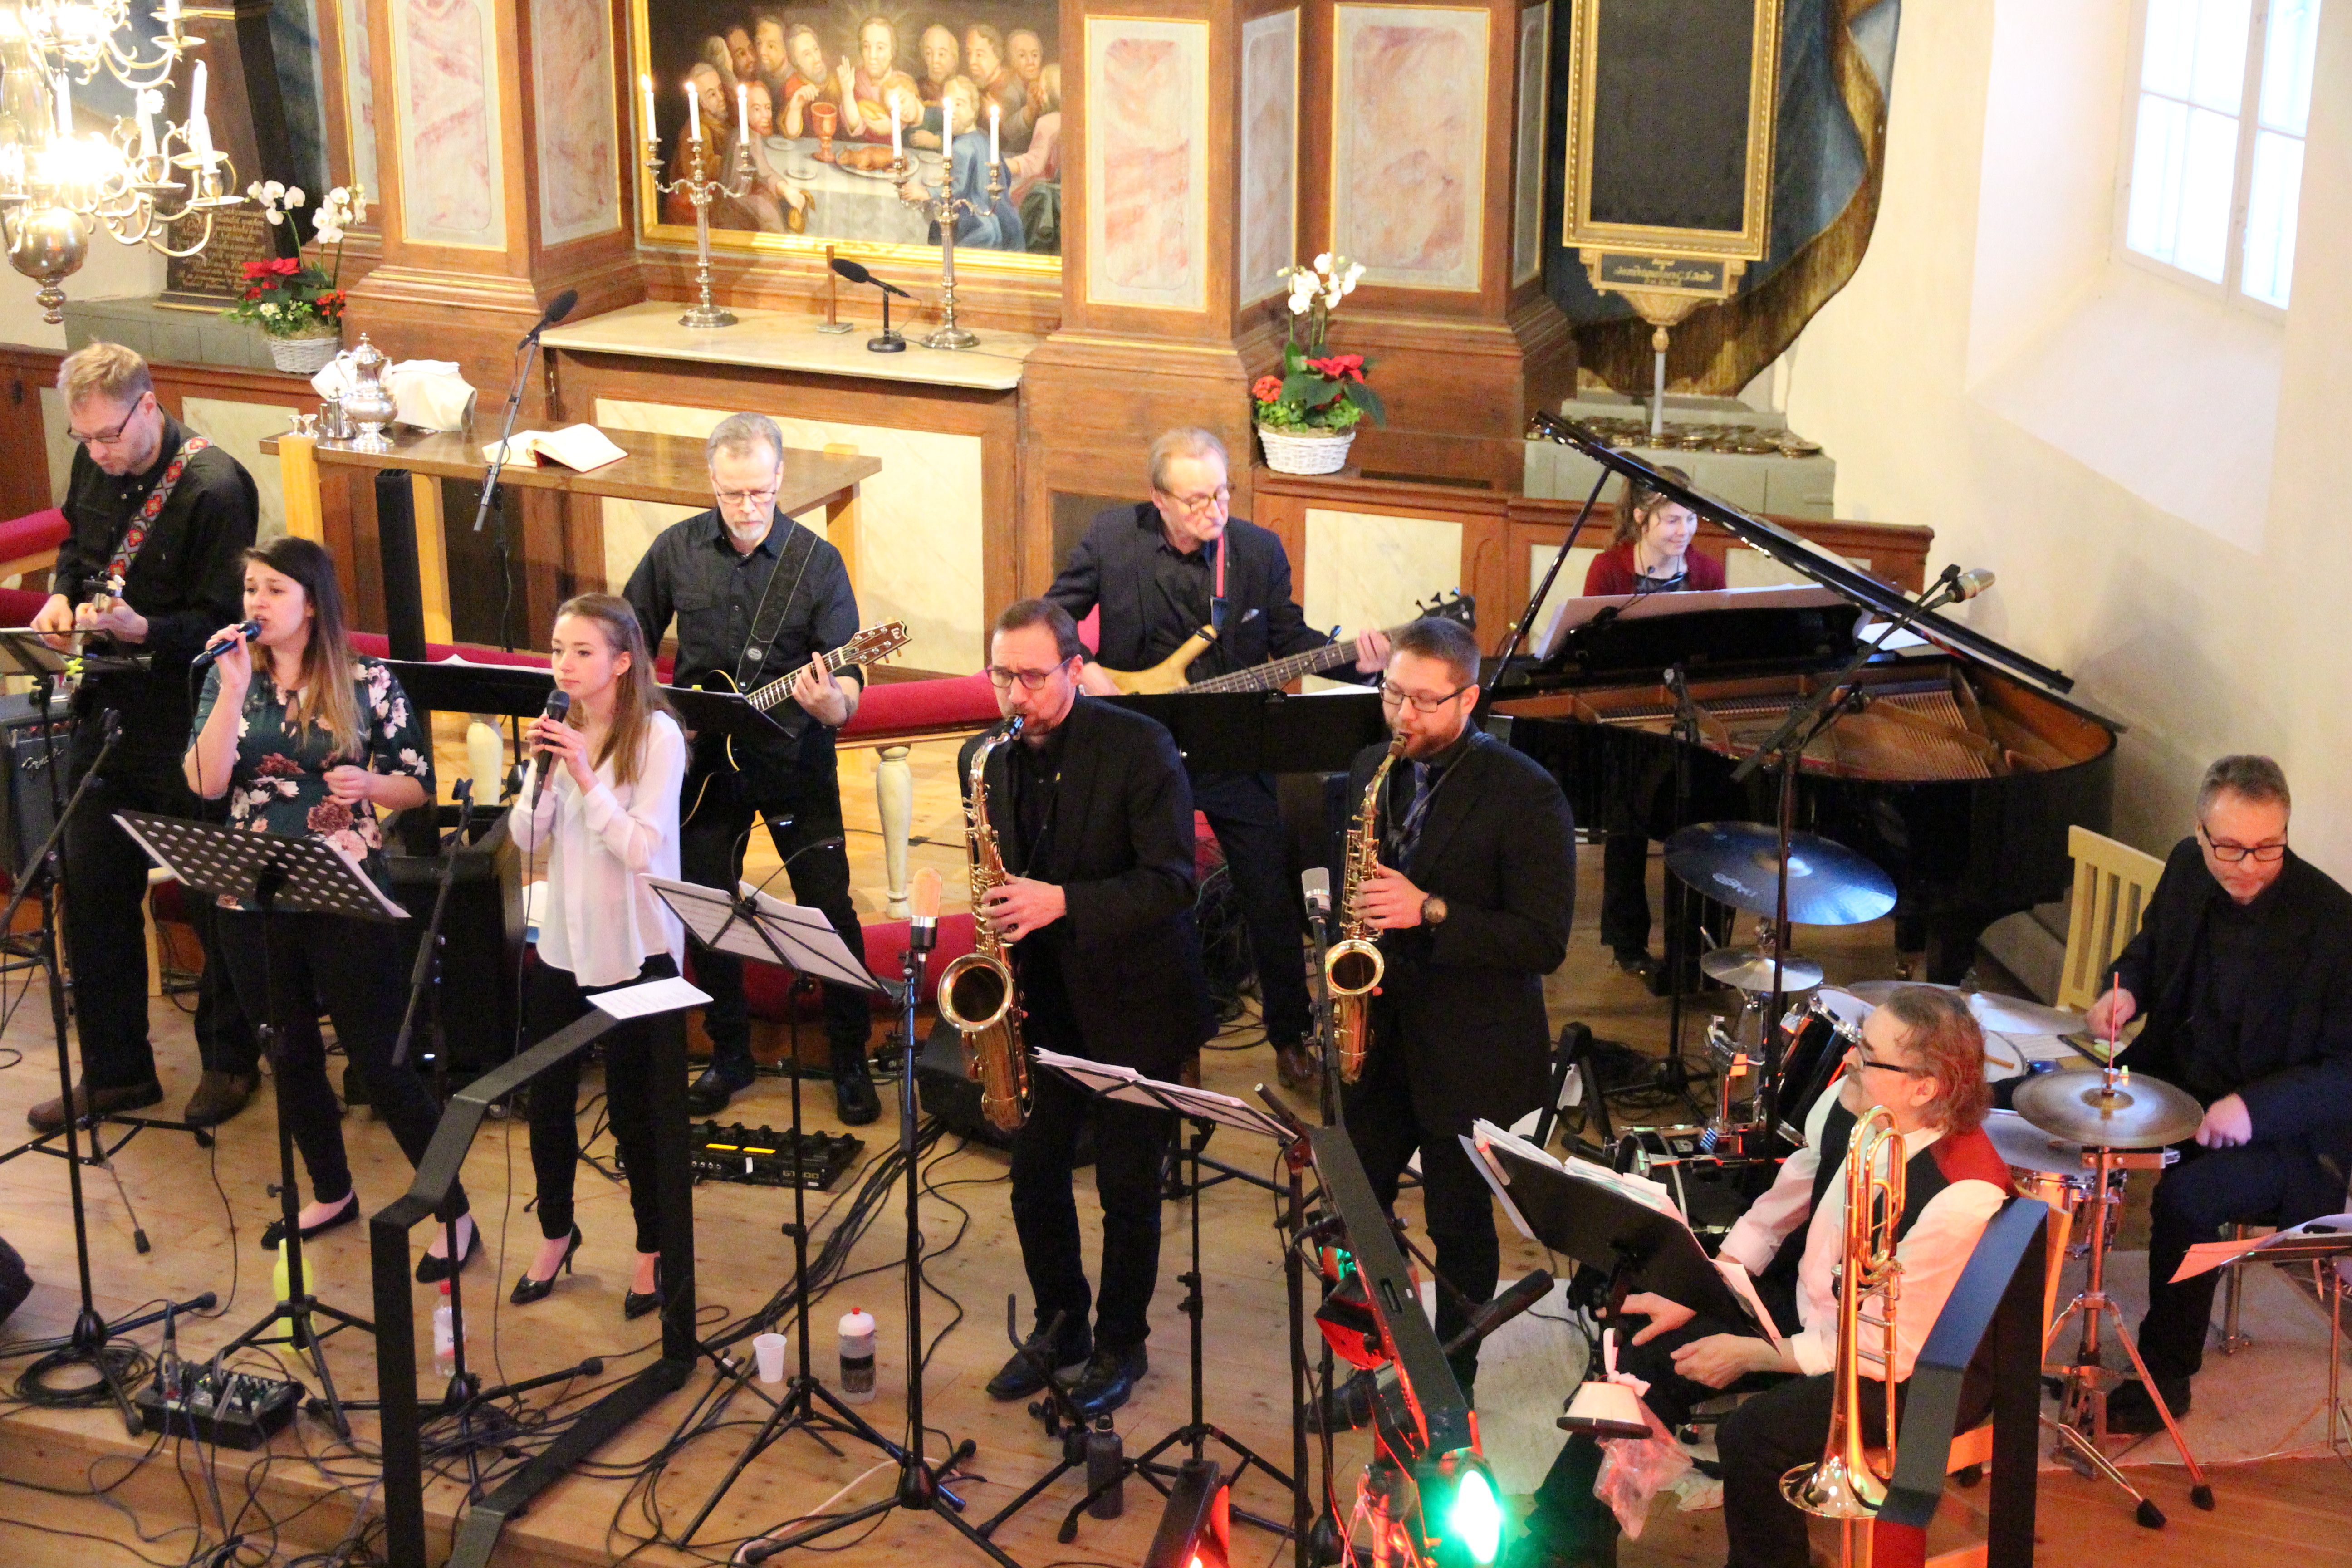 Kuva on 6.1.2019 Piikkiön kirkossa pidetystä jazz-kirkosta. Kuvassa on bändi ja taustalla näkyy kirkon alttari.